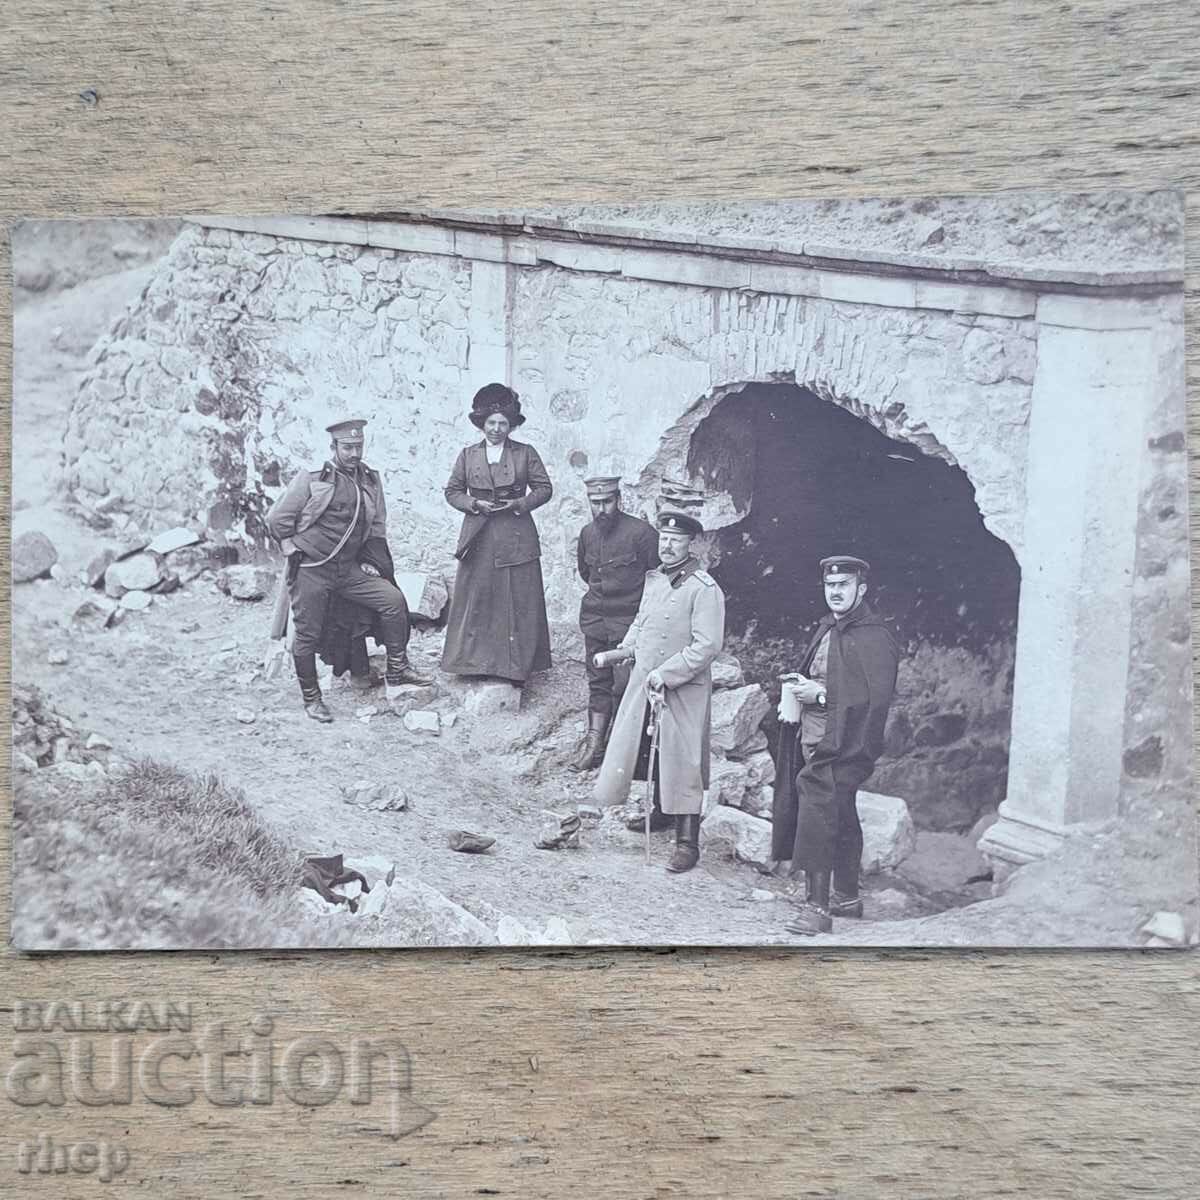 Ayvaz bunica Edirne 1913 Războiul Balcanic foto veche